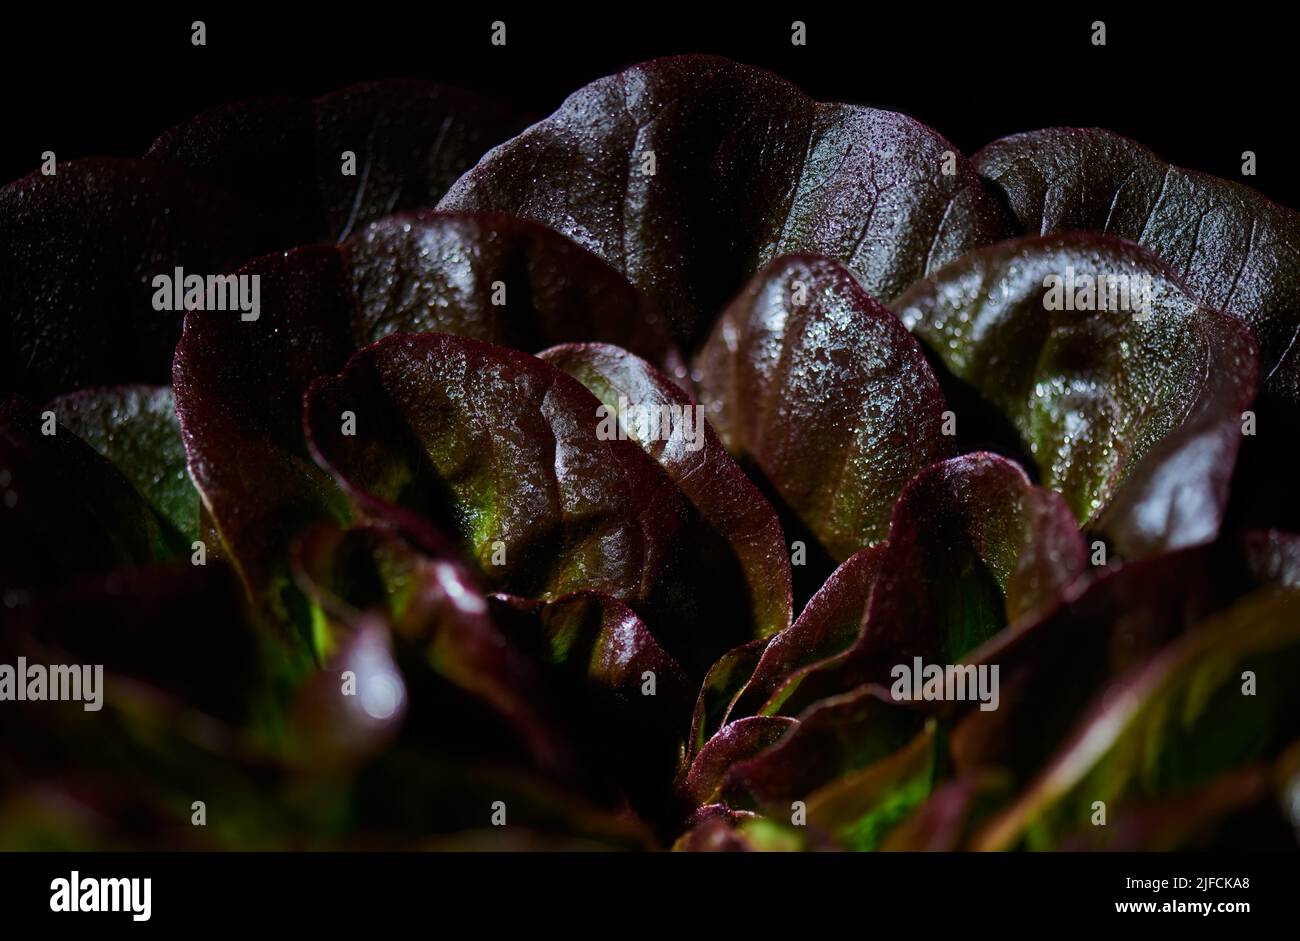 Roter butterroter Salat, Lactuca sativa, in Wassertropfen auf schwarzem Hintergrund. Hintergrund Butterkopfsalat. Nahaufnahme. Stockfoto